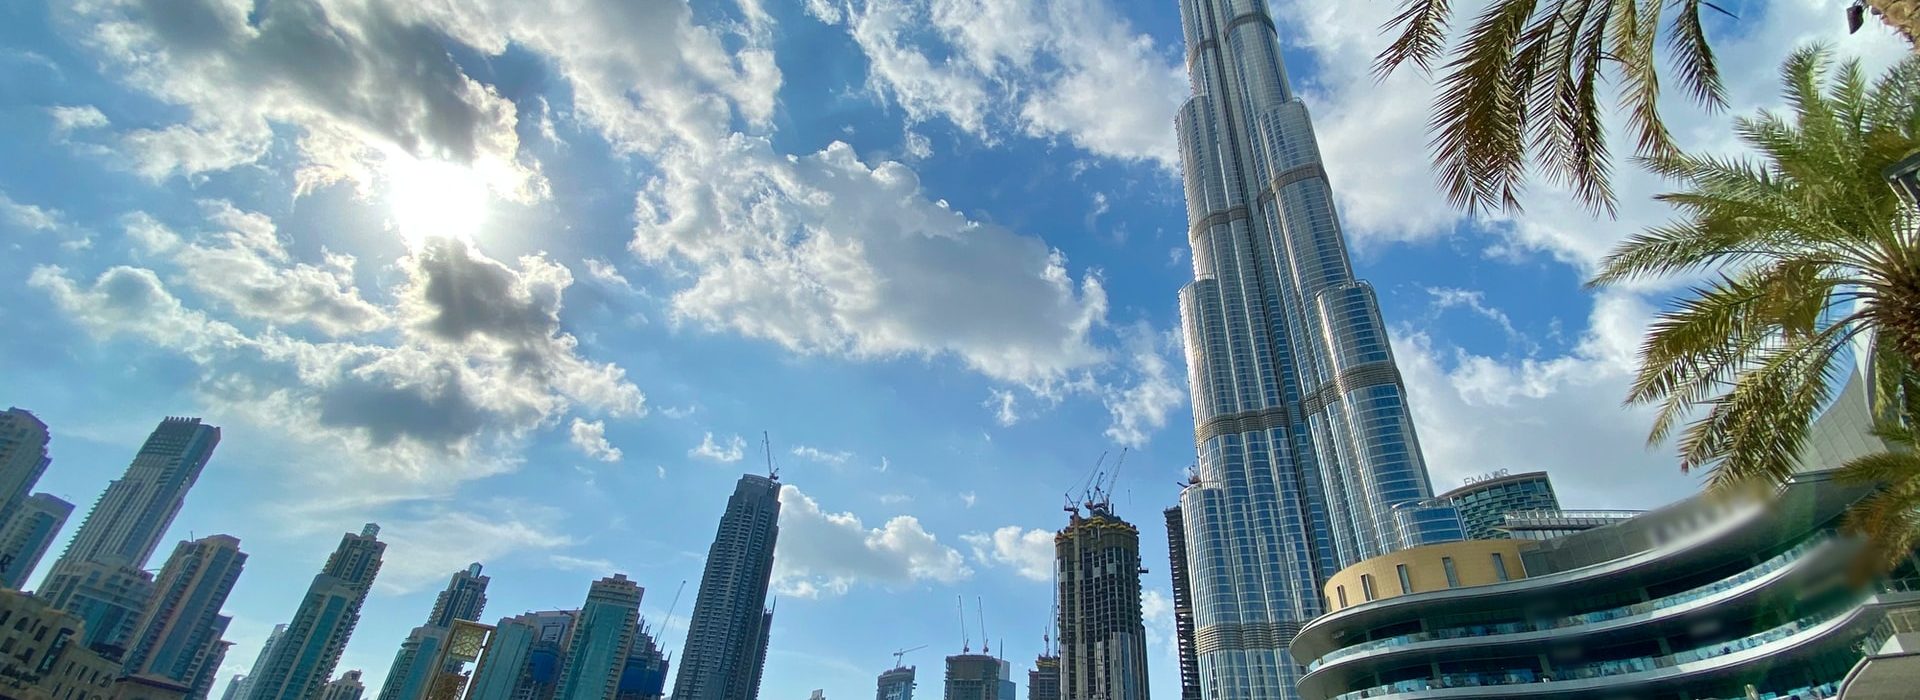 Dubai city shot